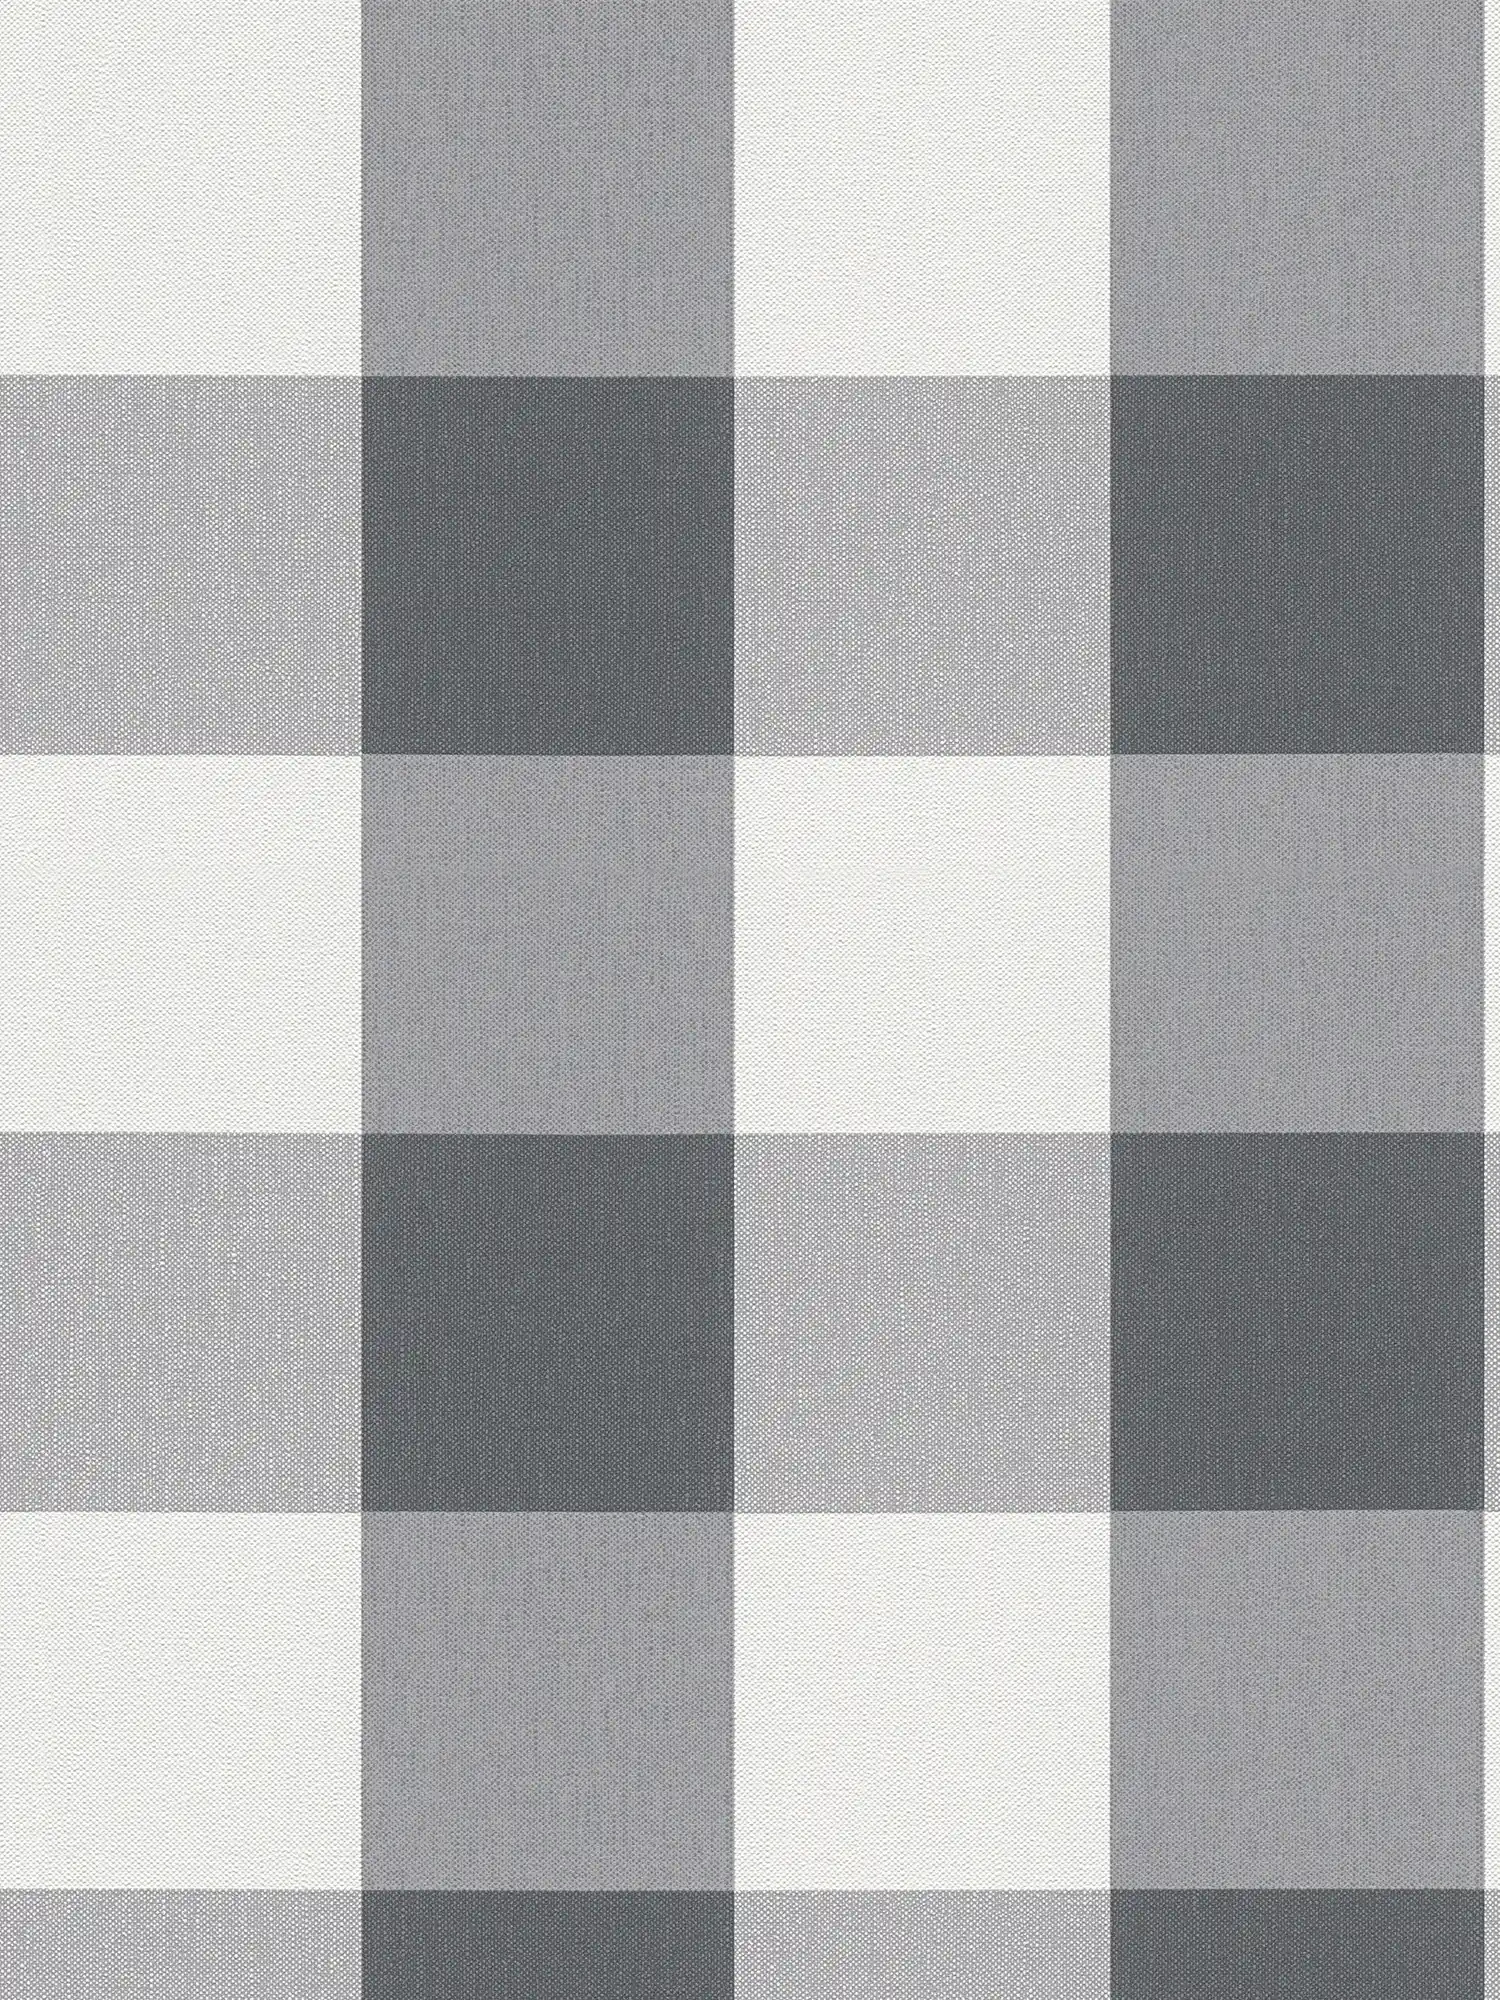 Papier peint à carreaux aspect textile dans des tons harmonieux - blanc, gris
